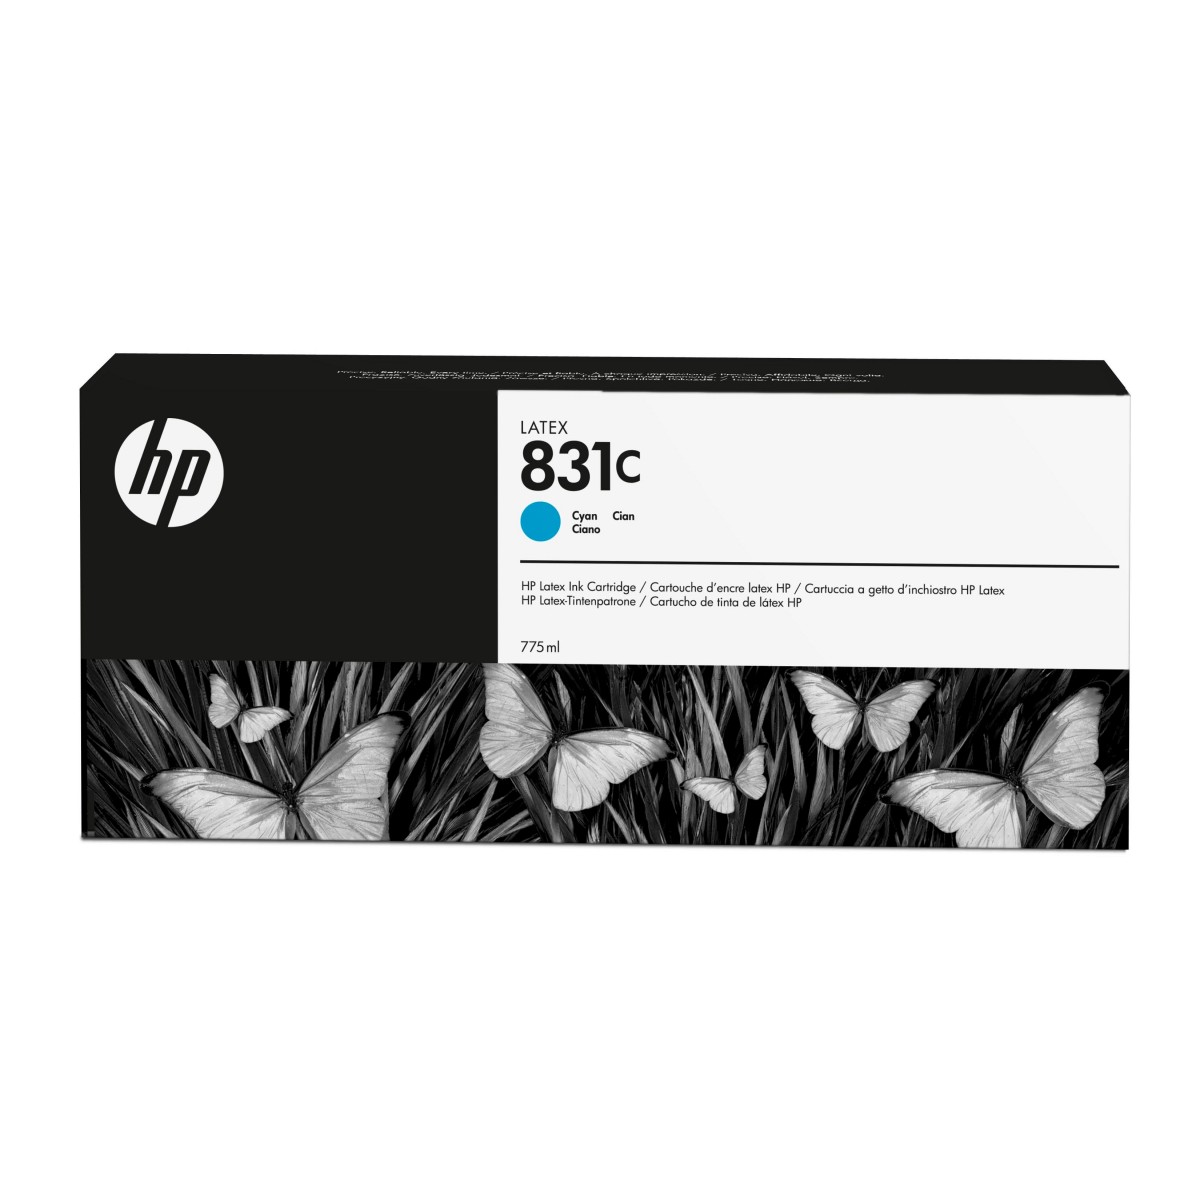 HP 831C - Original - Latex - Cyan - HP - HP Latex 310 - 330 - 360 - 560 - 570 - 315 - 335 - 1 pc(s)